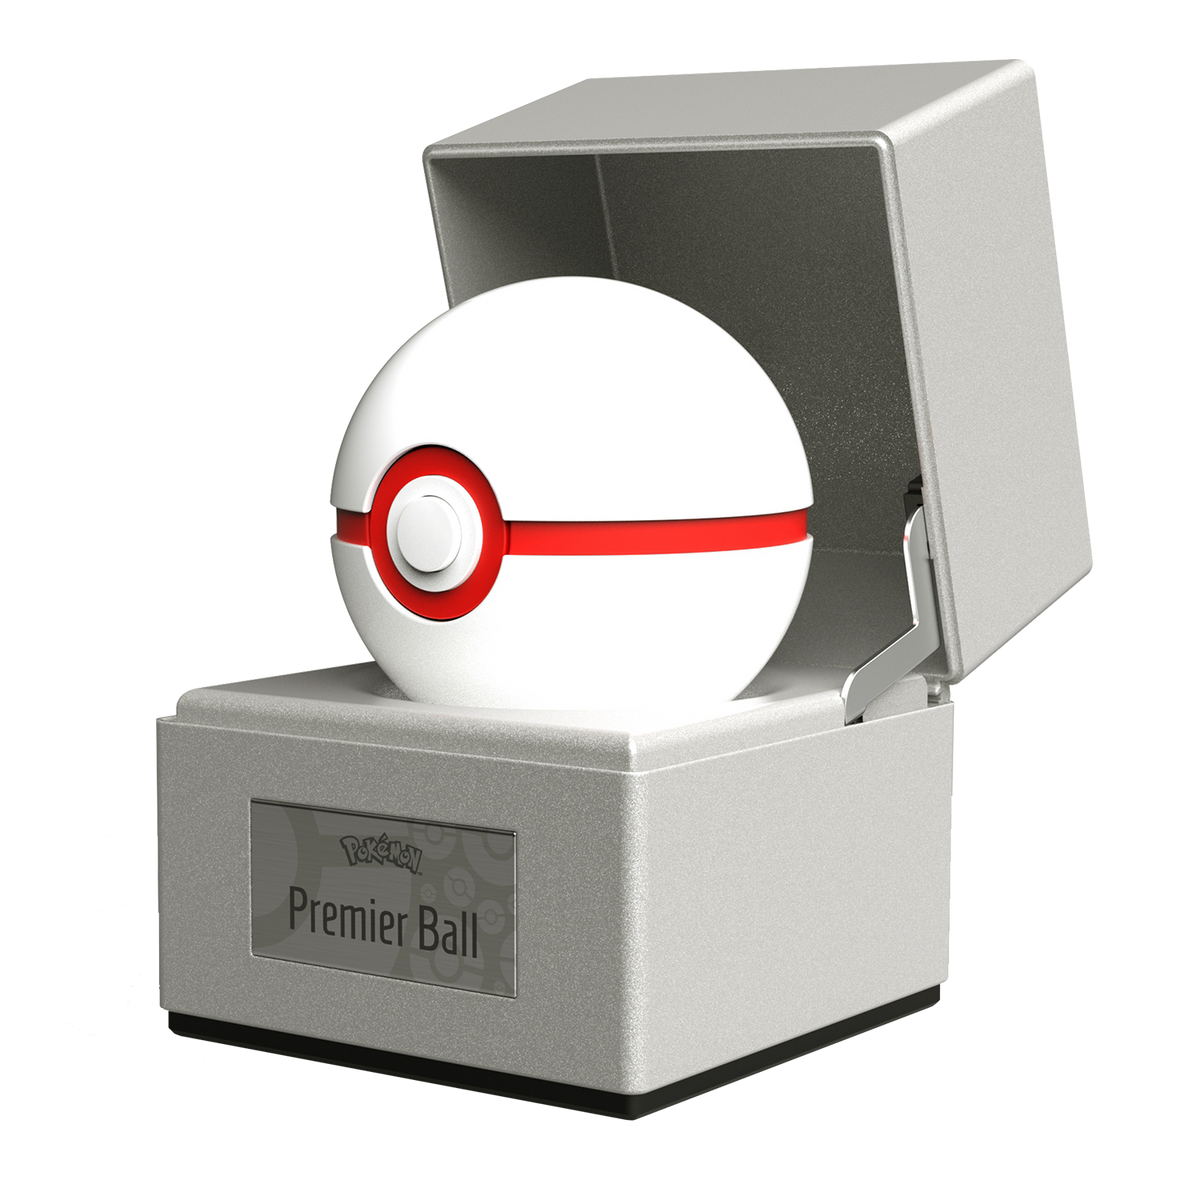 Collect 'Em All: The Wand Company Teams with Pokémon for Replica Poké Balls